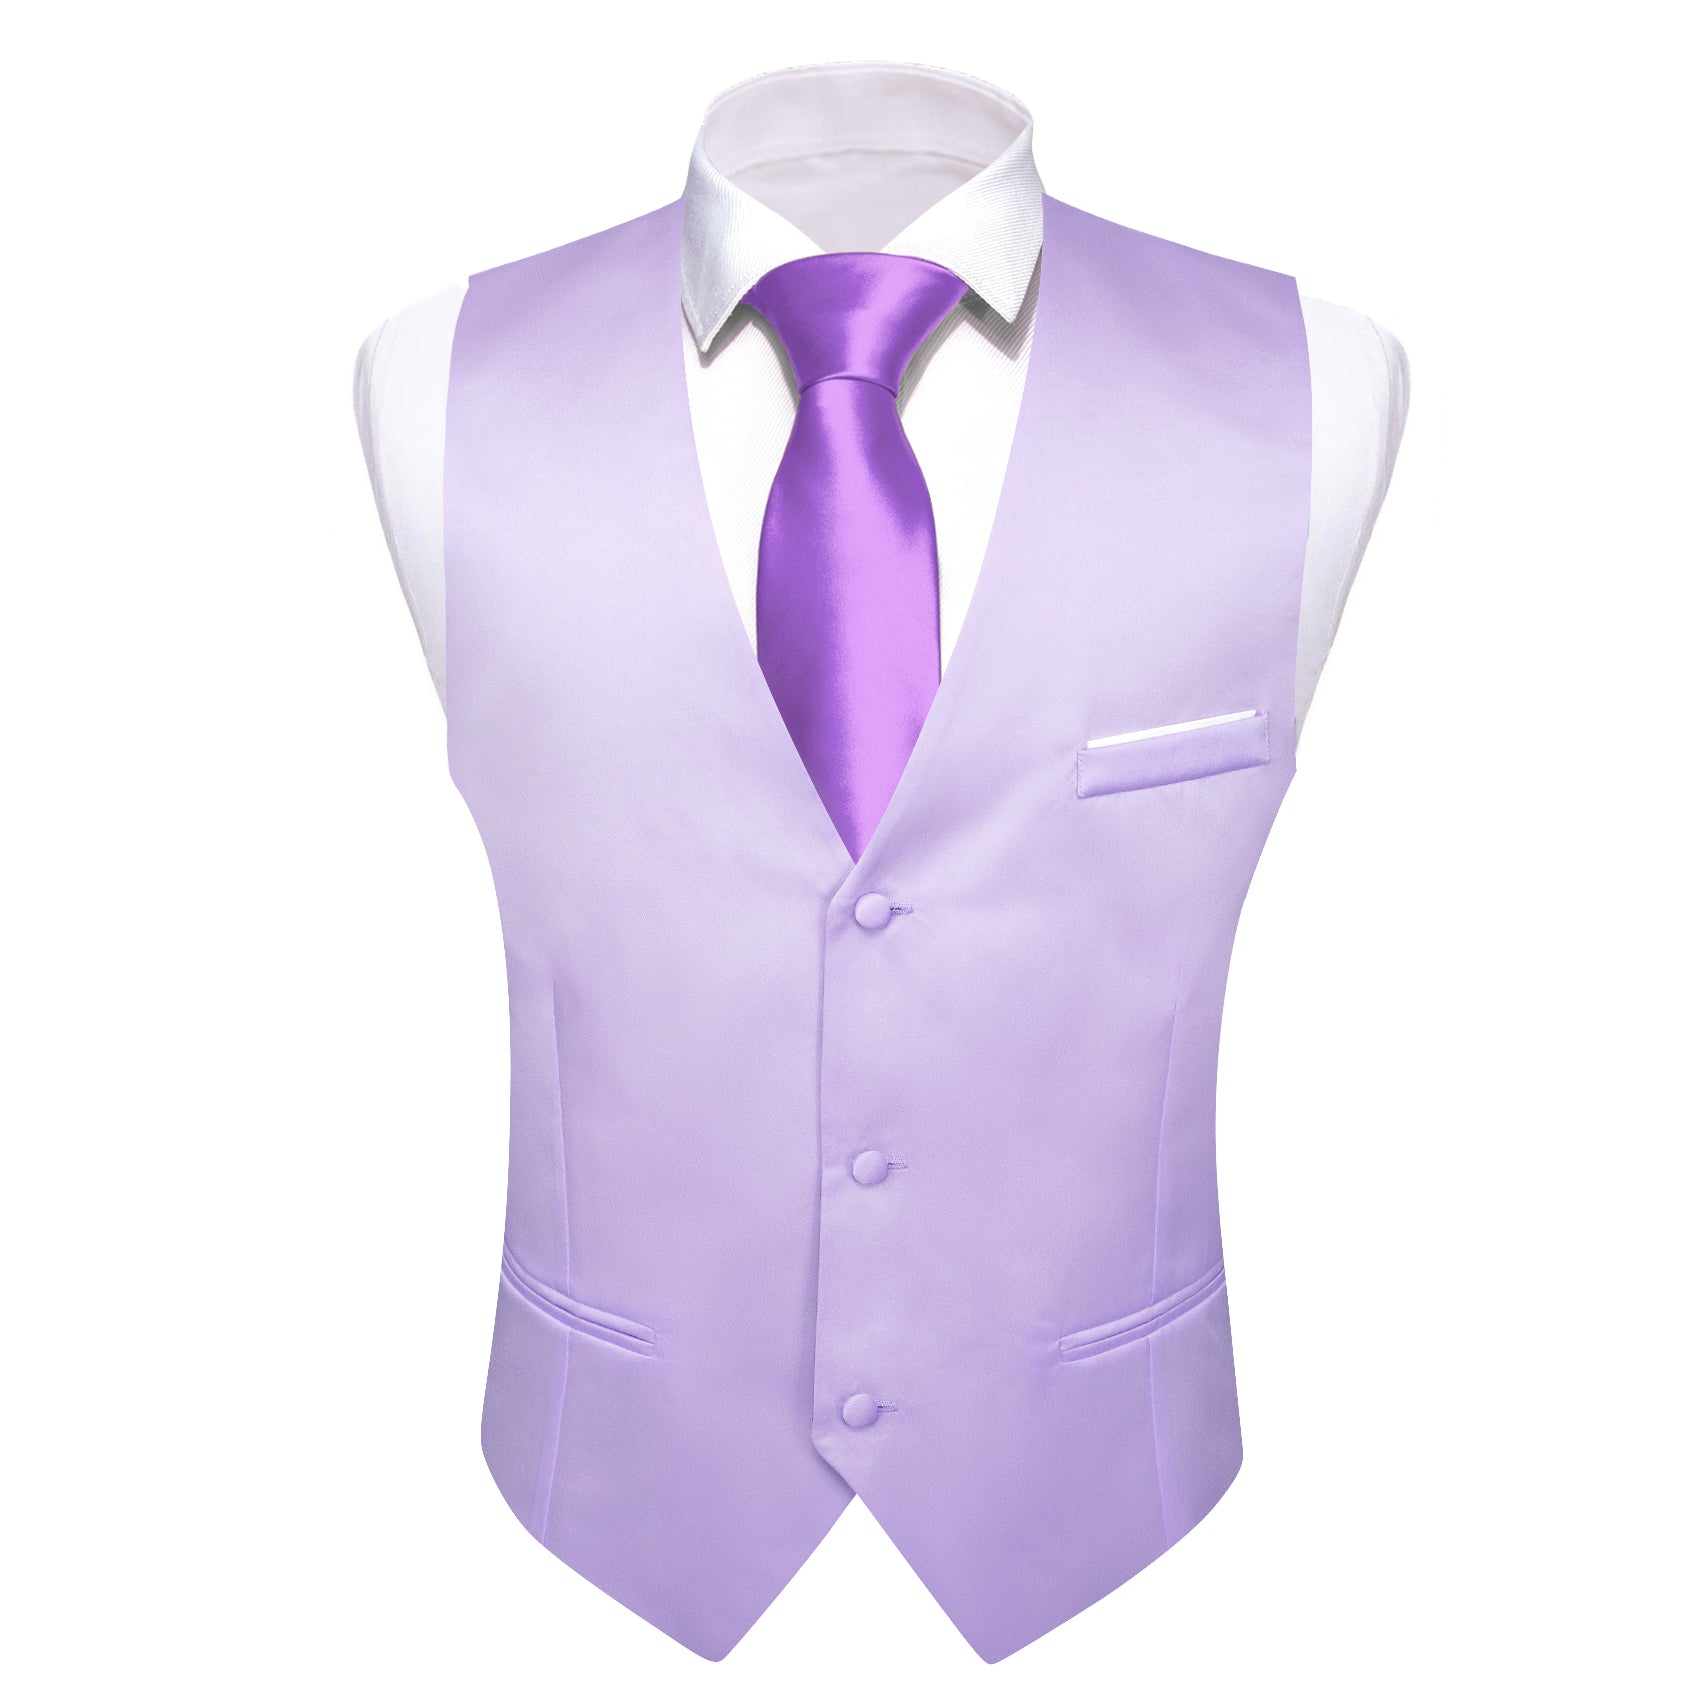 Barry.wang Purple Solid Business Vest Suit